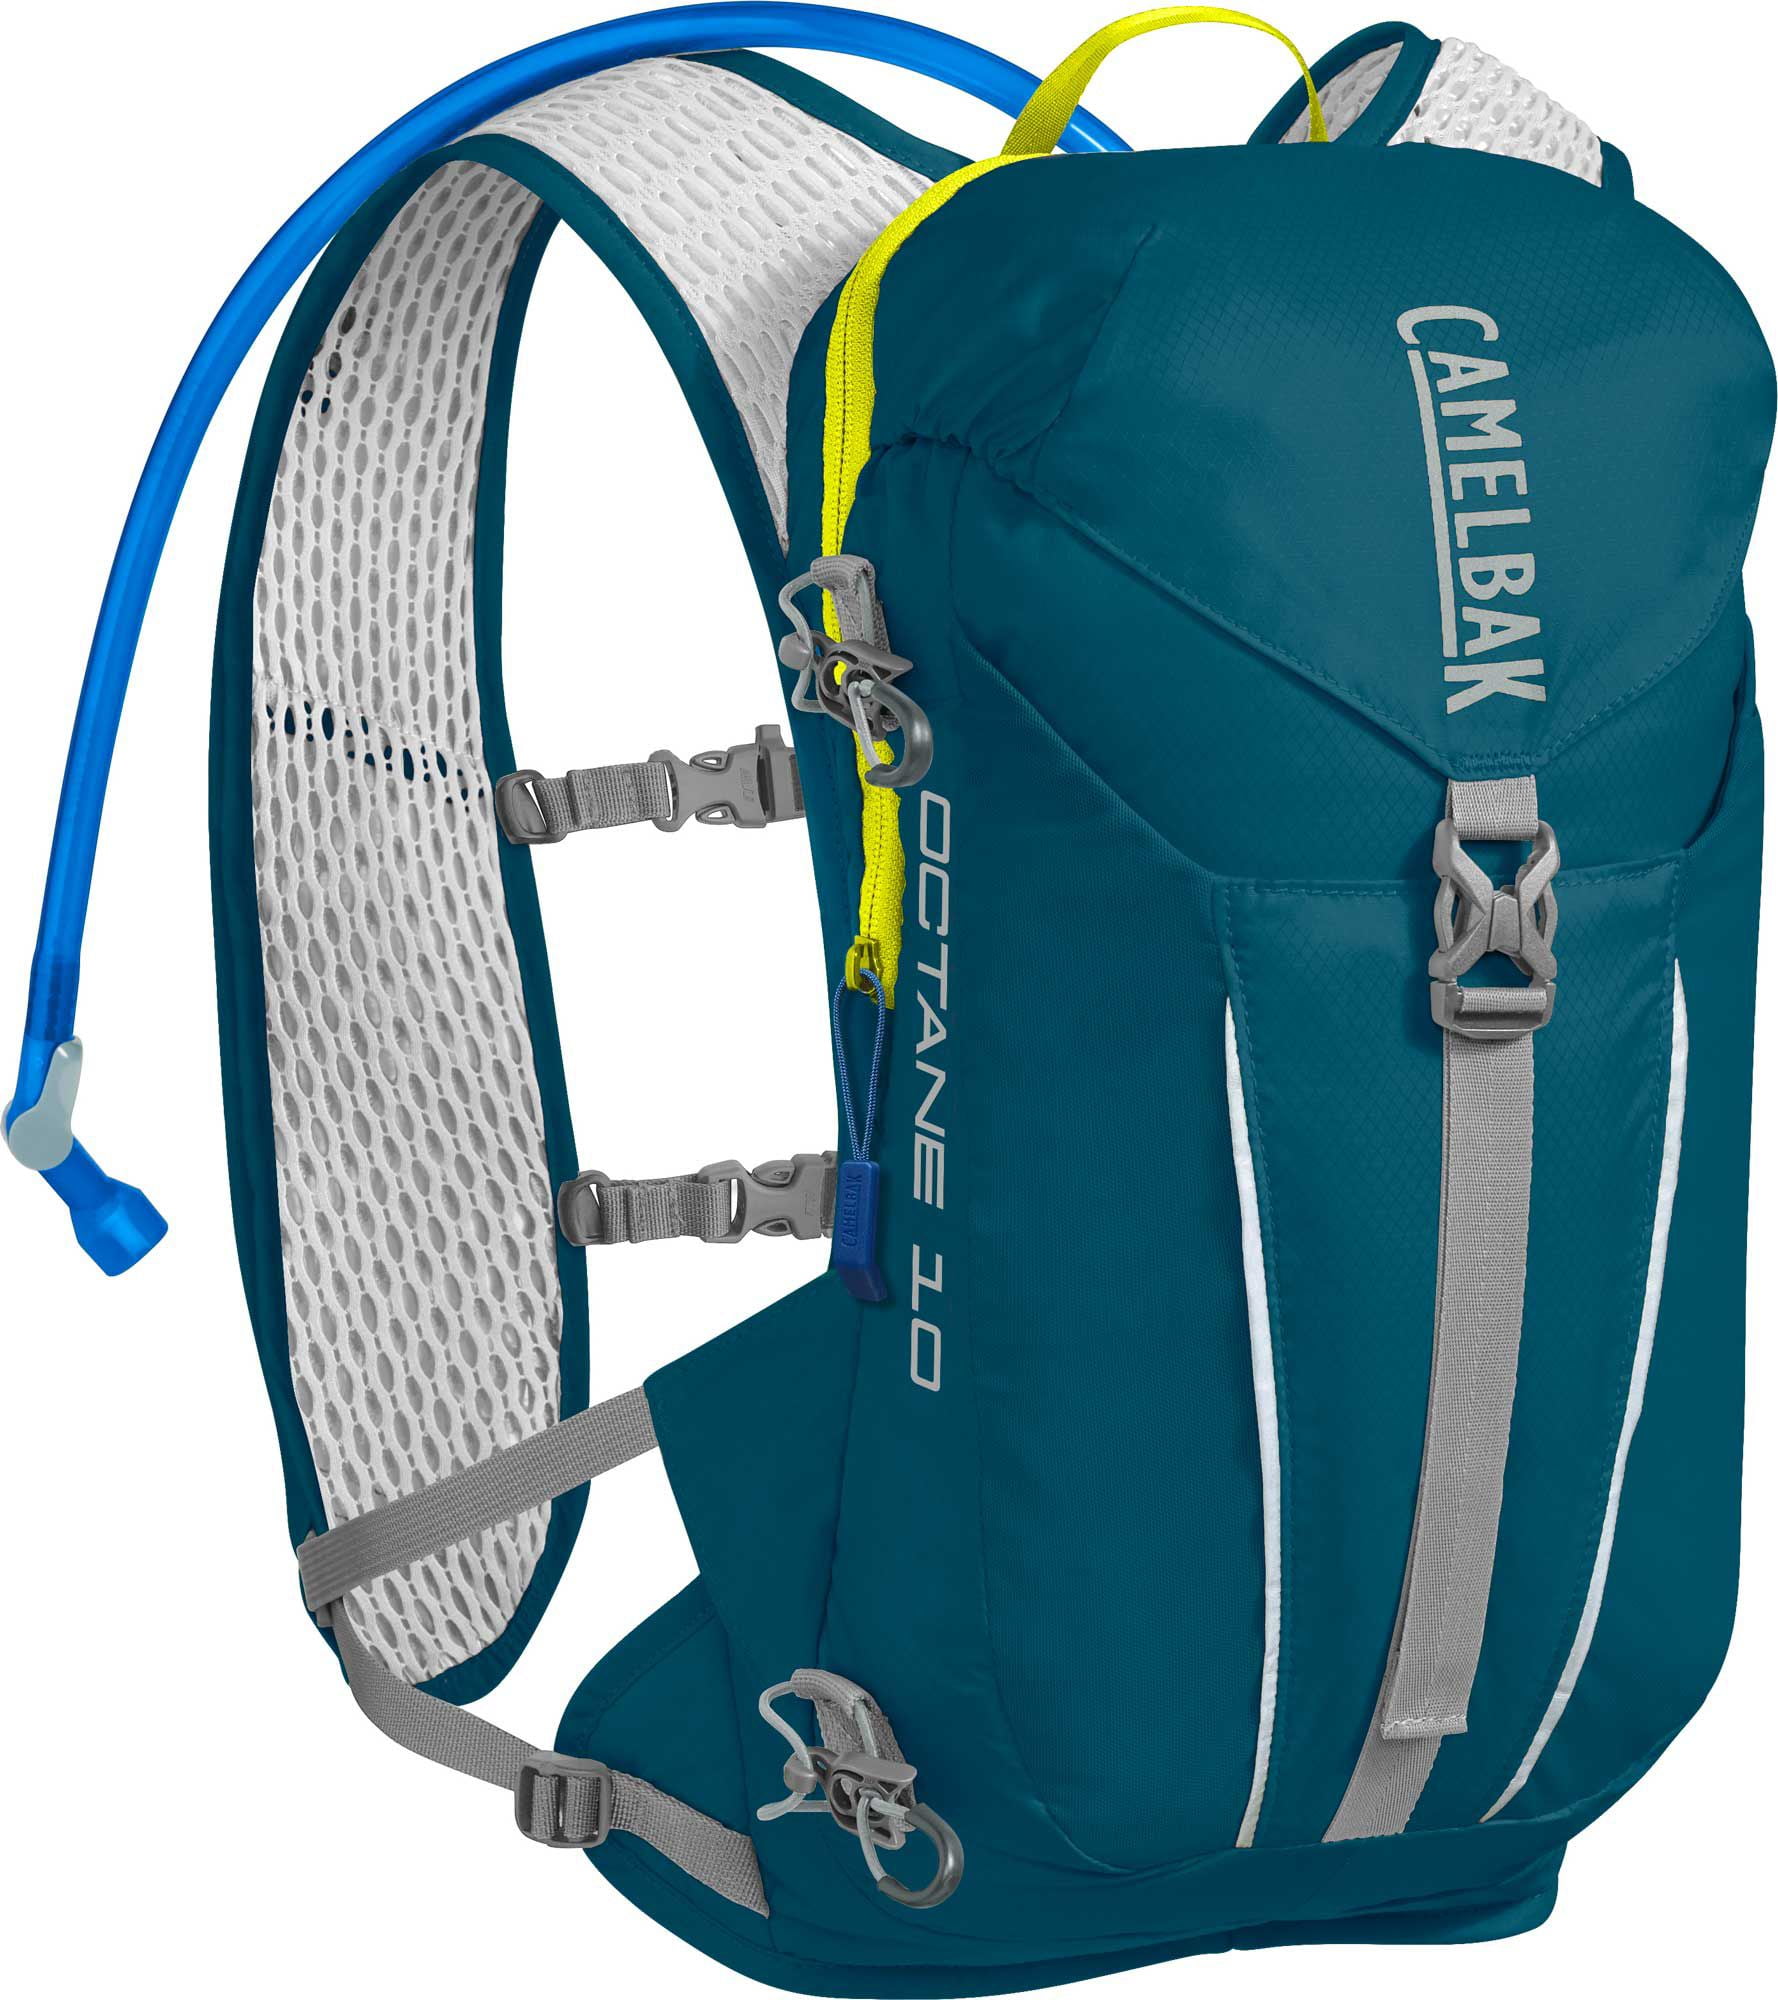 2L Water Bladder Backpack Hydration System Camel bak Pack Bag Camping Hiking QL 